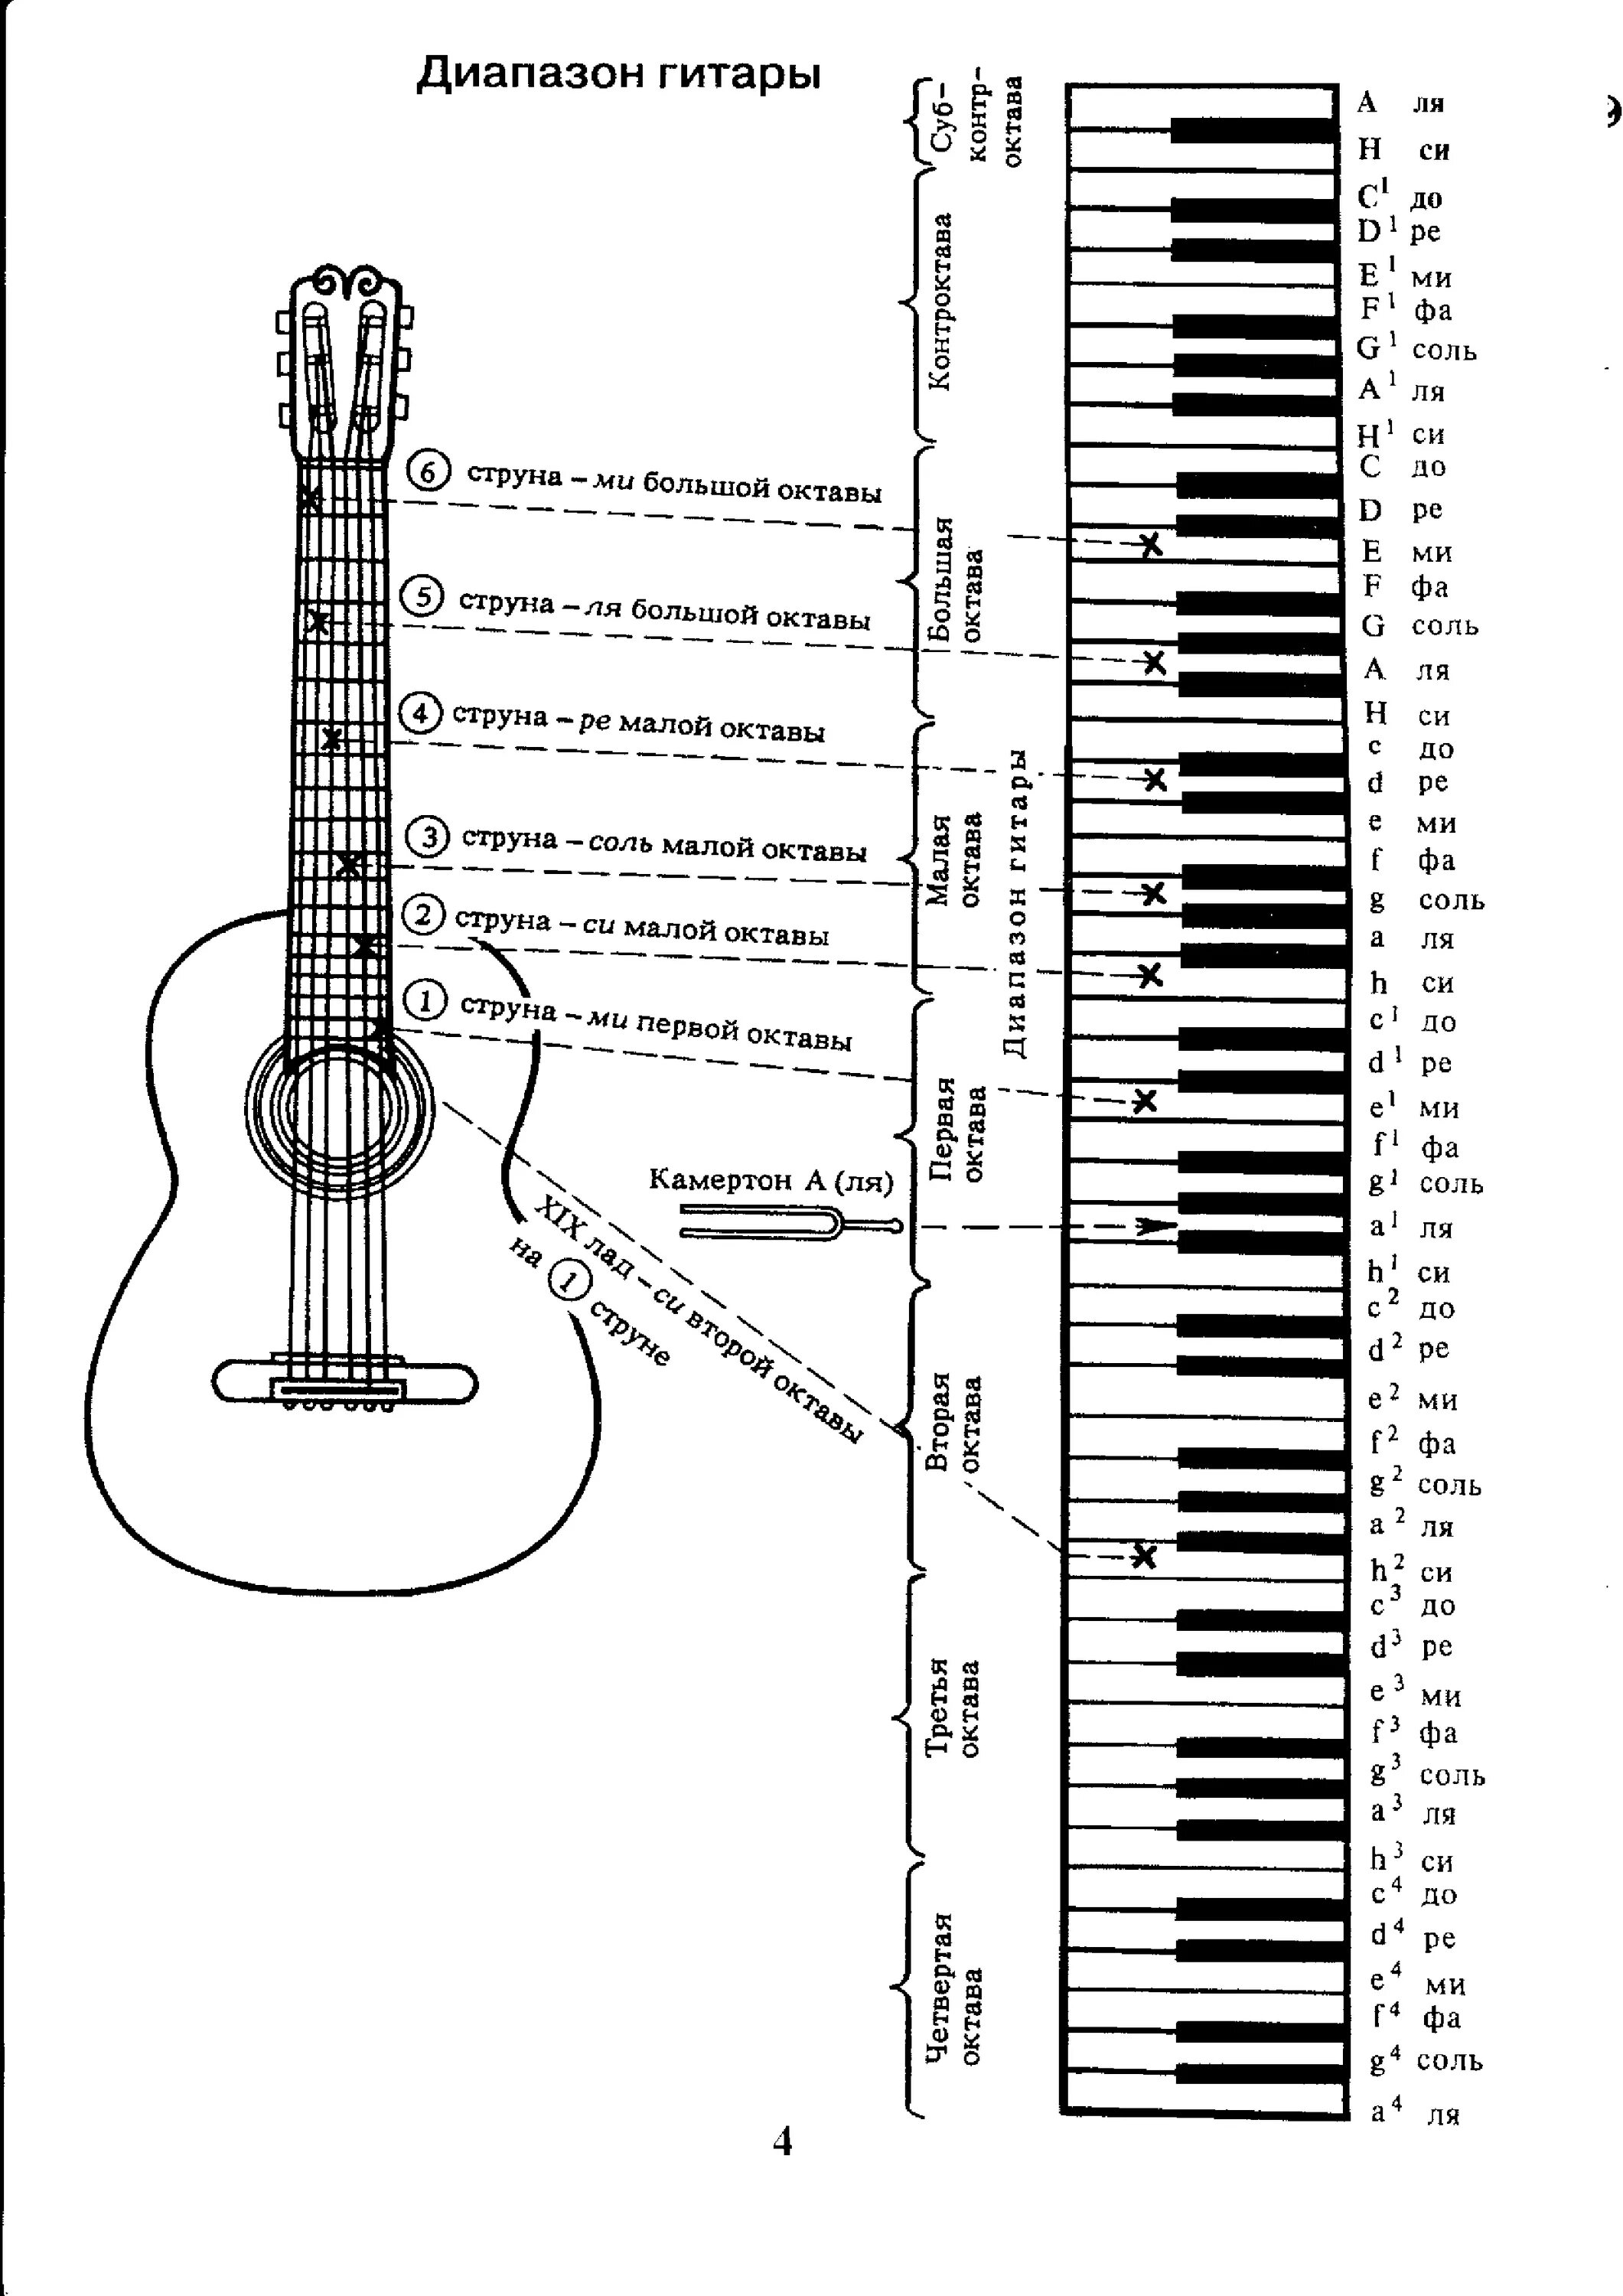 Аппликатура аккордов для гитары 6 струн для начинающих. Ноты на гитарном грифе 6 струнной. Лады на 6 струнной гитаре для начинающих. Схема гитары классической 6 струнной. Октавы на грифе